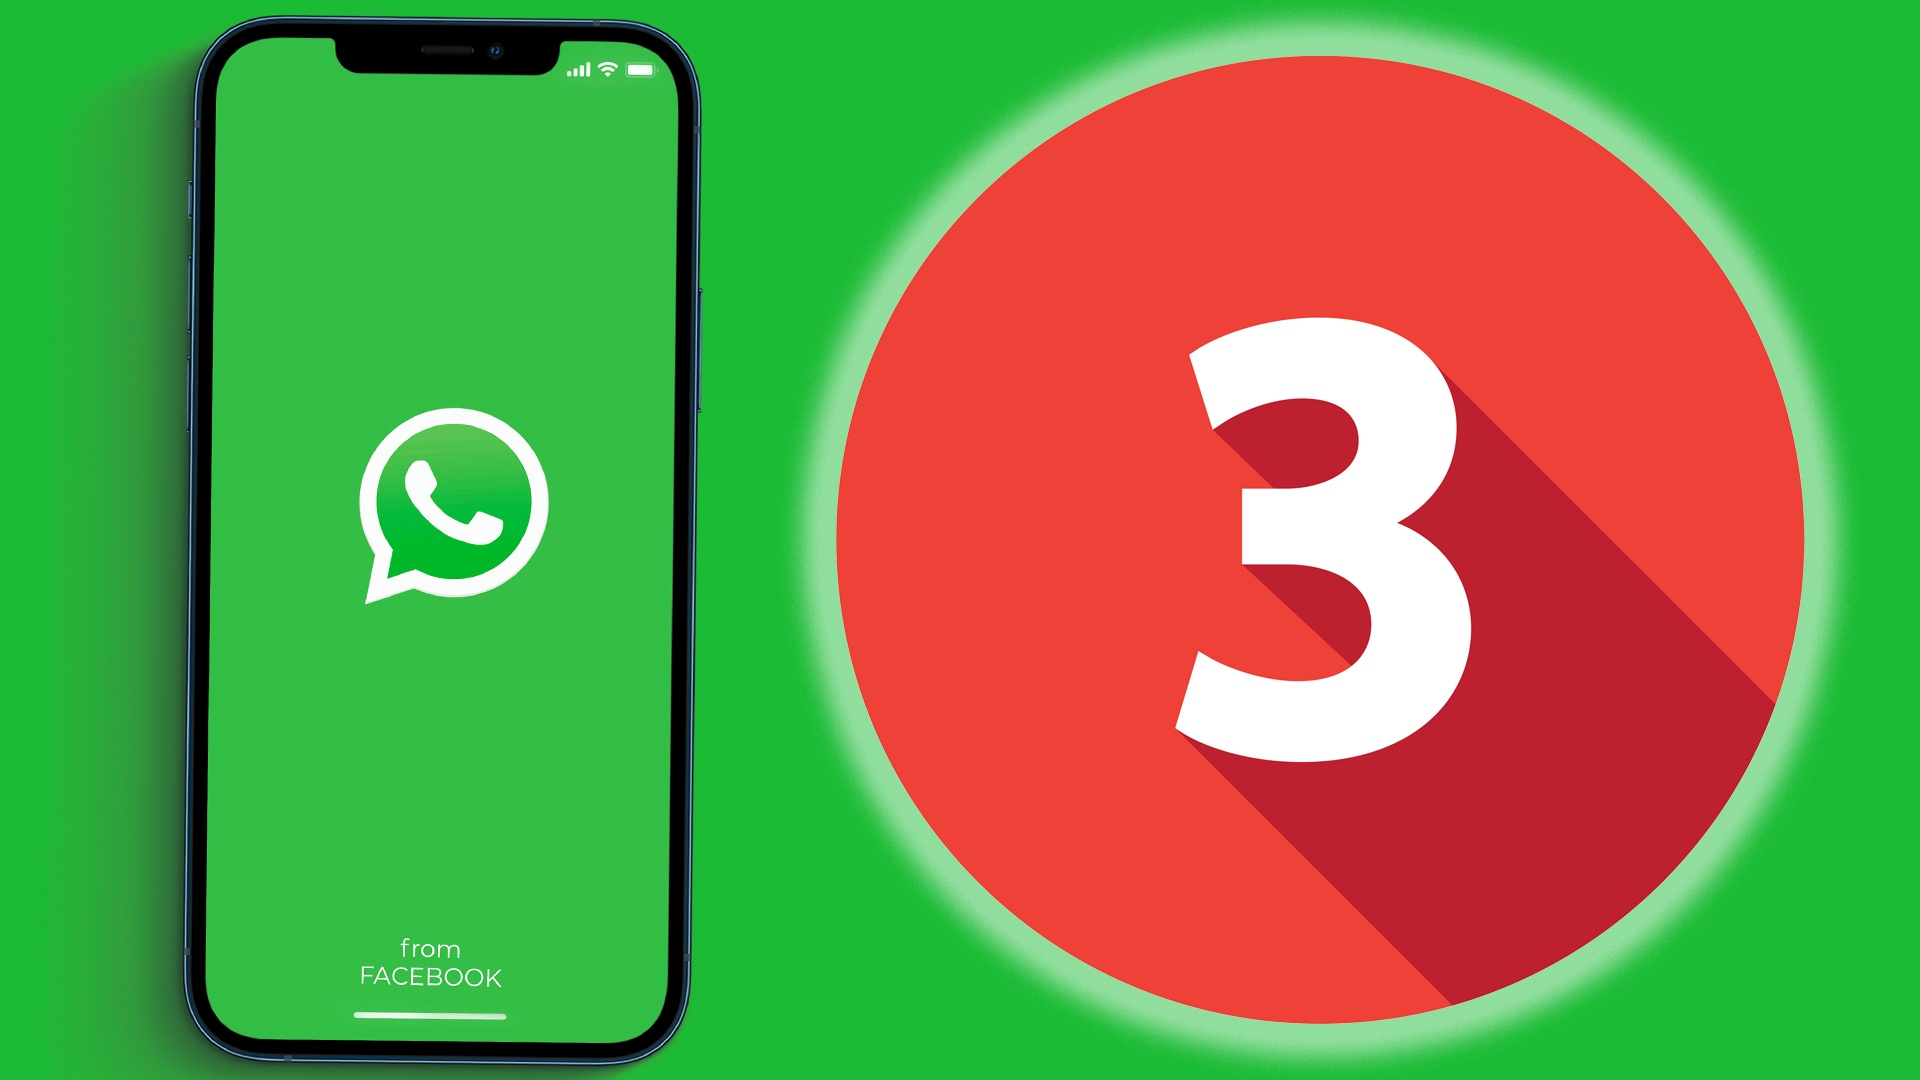 WhatsApp soll bald neue Funktionen bekommen: So funktionieren sie voraussichtlich